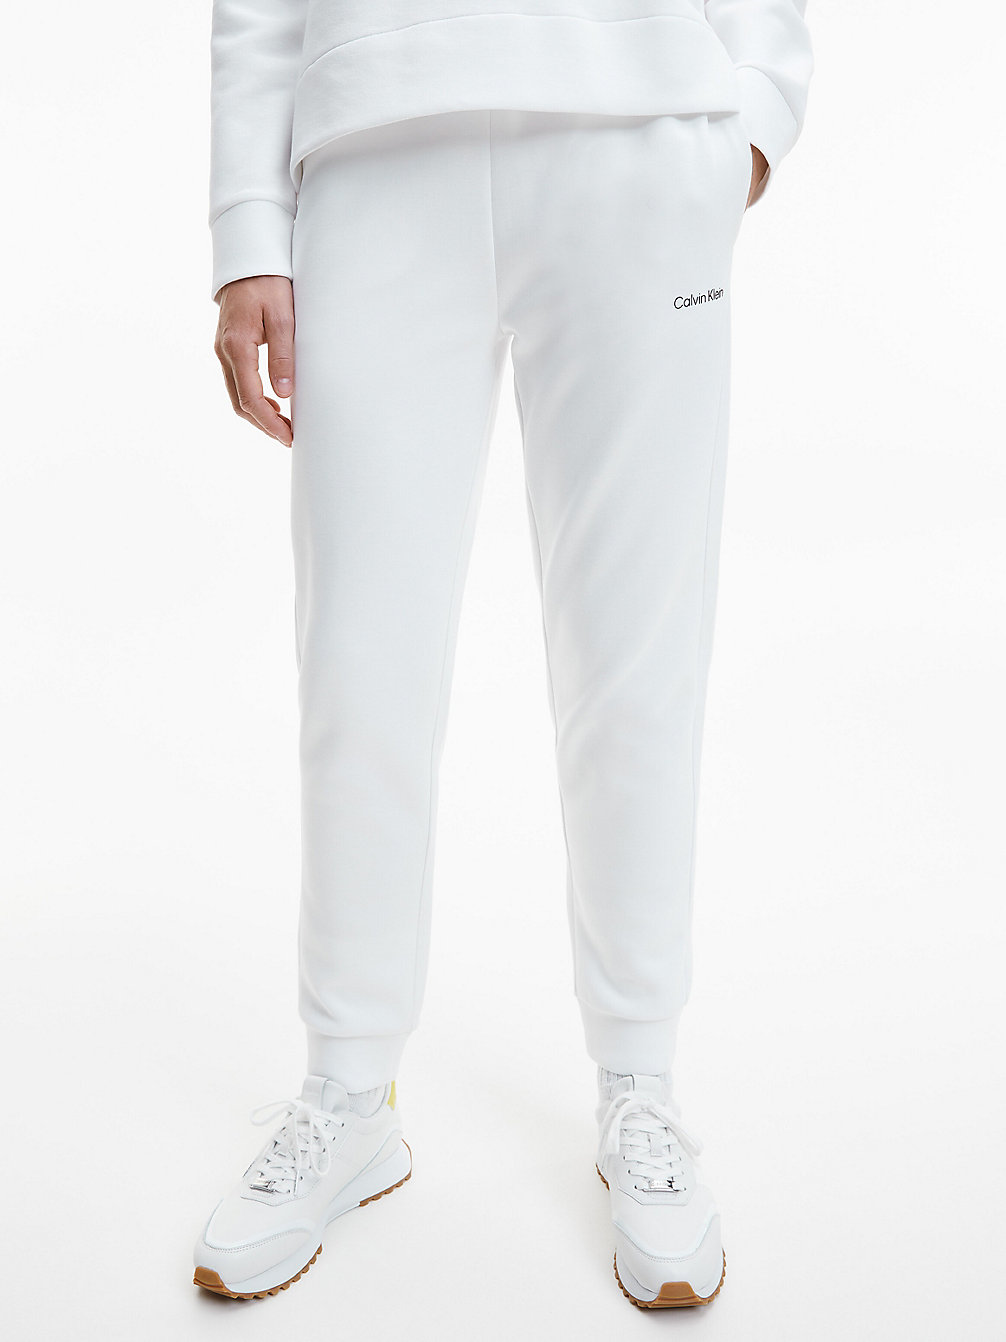 BRIGHT WHITE > Wąskie Spodnie Dresowe Z Przetworzonego Poliestru > undefined Kobiety - Calvin Klein